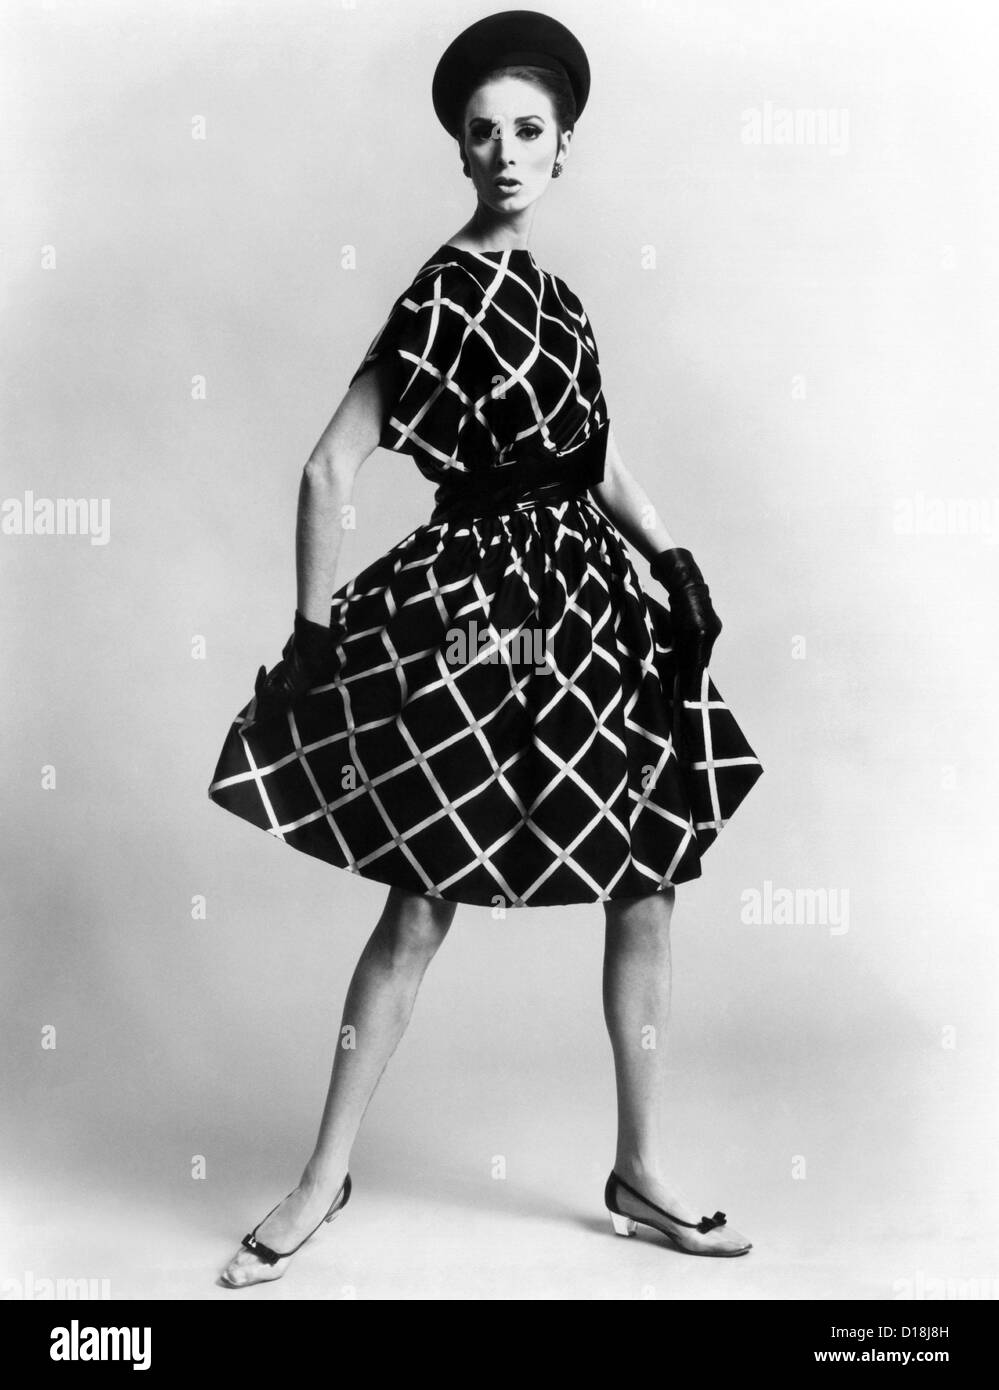 Kleid von Pauline Trigère. Kurz und voller Schürzen Kleid mit einem locker  drapierte Oberteil. Das Modell trägt niedrigen Absätzen Schuhe  Stockfotografie - Alamy